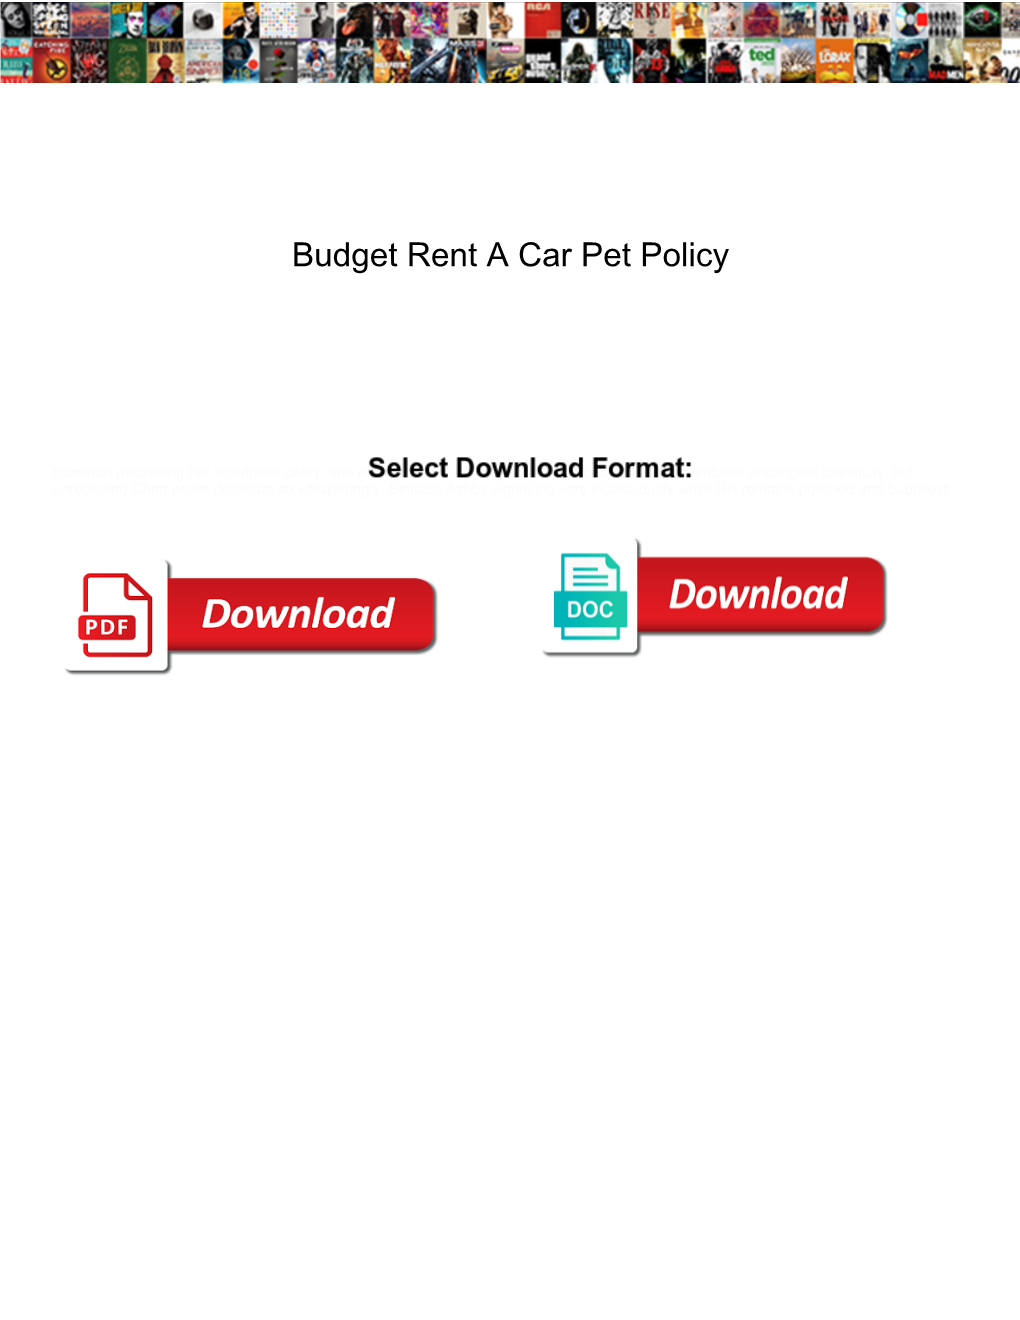 Budget Rent a Car Pet Policy